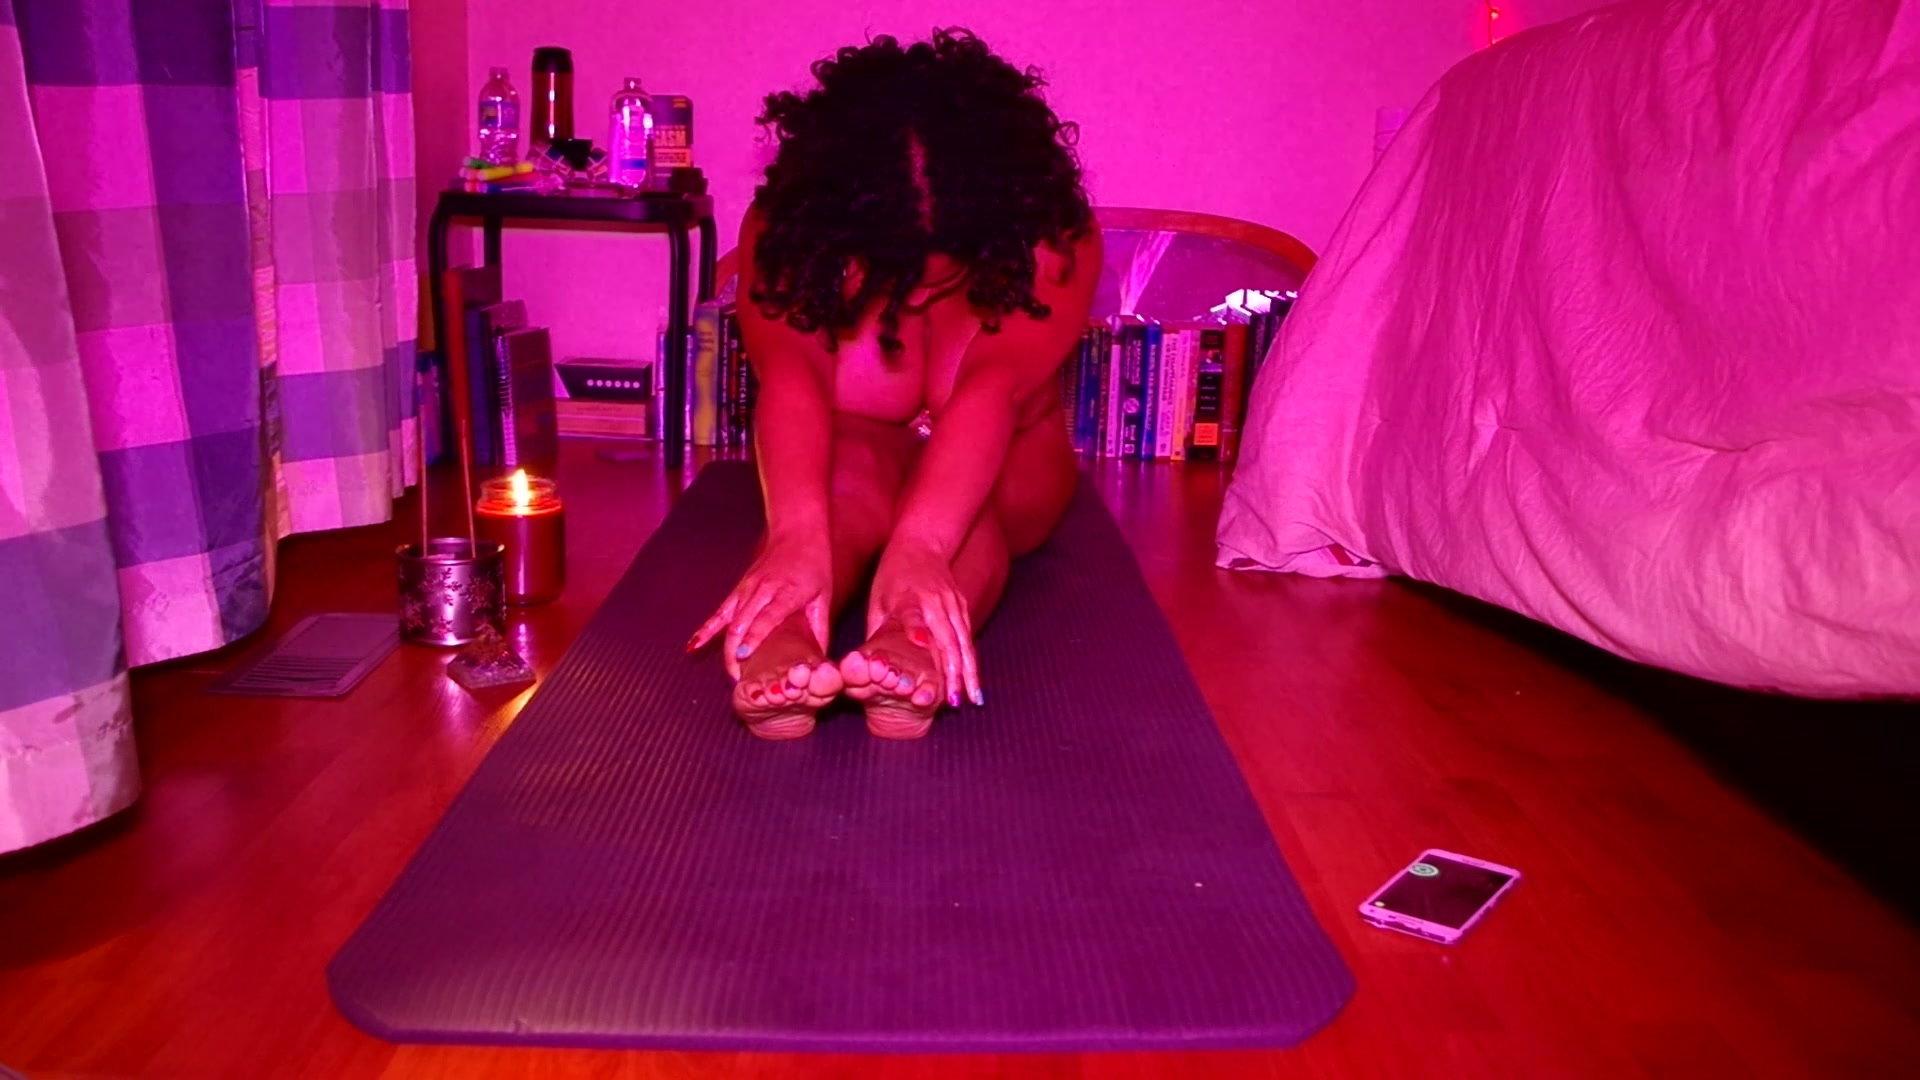 Naked Yoga - Professor Gaia Monroe